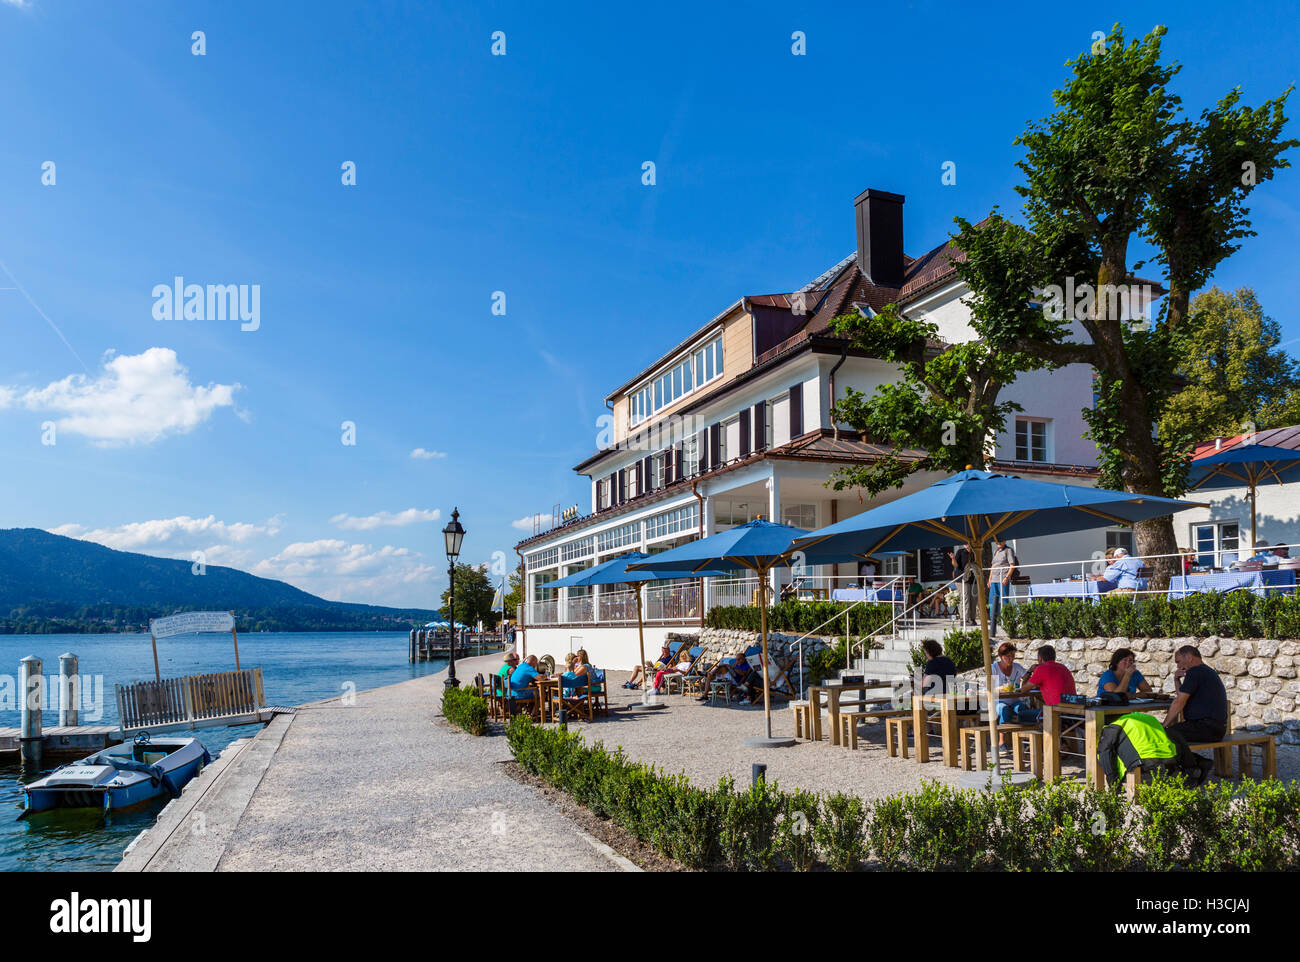 Restaurant au bord du lac dans la ville de Tegernsee, le lac Tegernsee, Bavière, Allemagne Banque D'Images